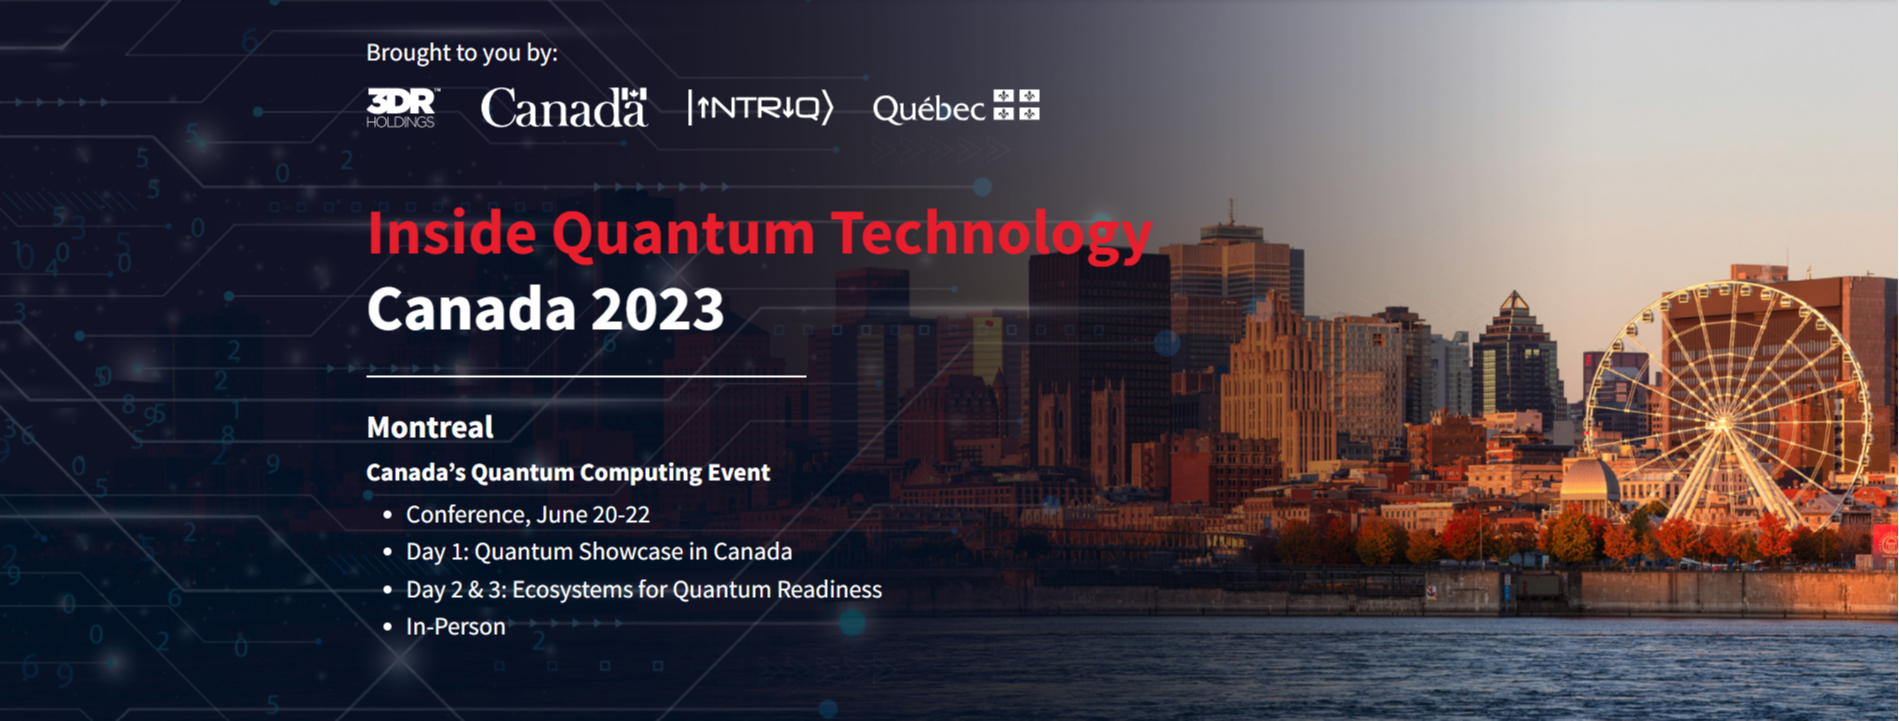 Inside Quantum Technology (IQT) Canada